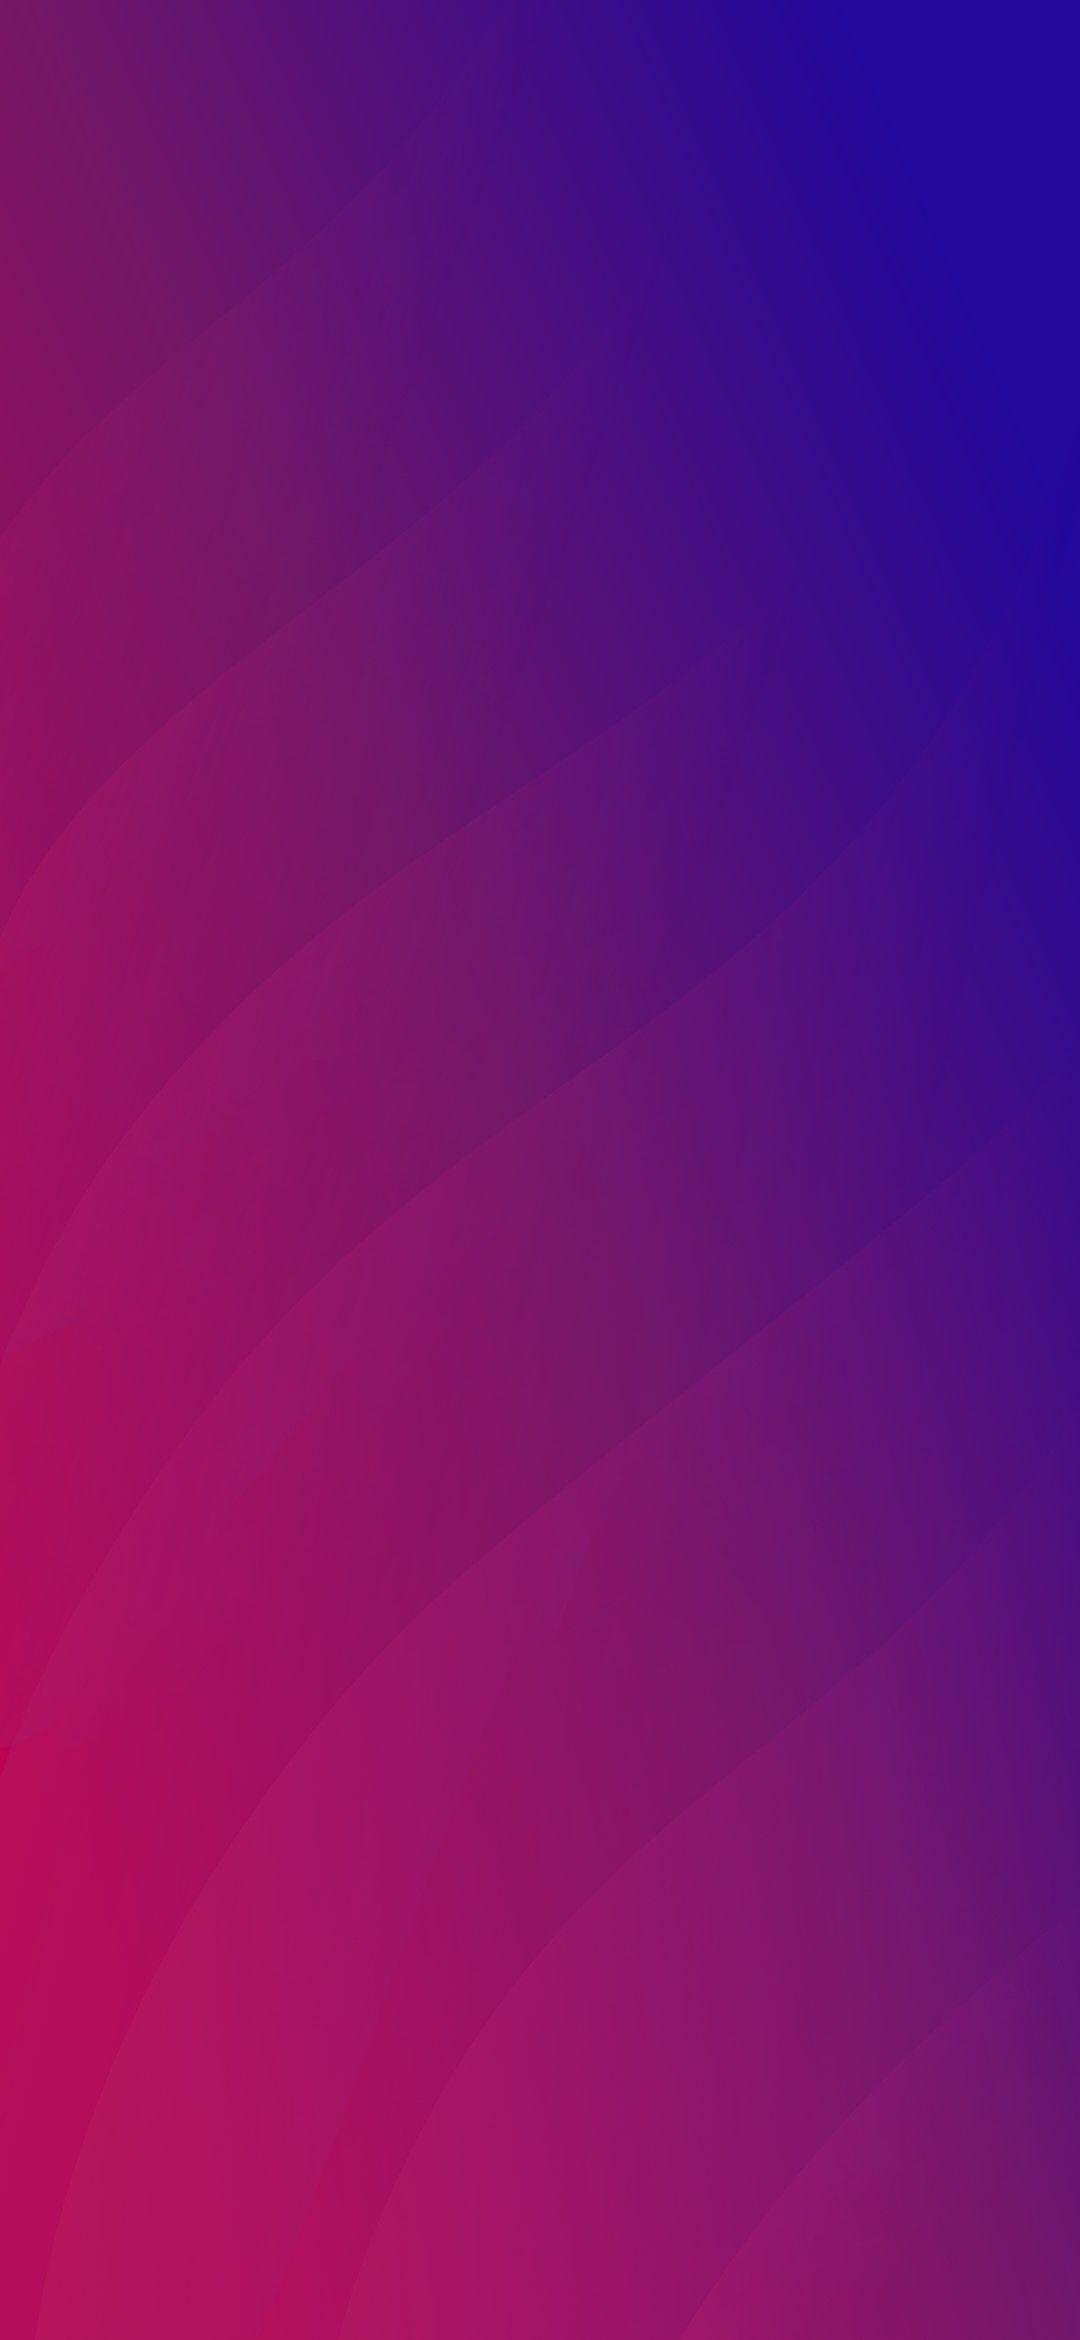 Oppo Find X Wallpapers: Các bức ảnh nền Oppo Find X đẹp mắt sẽ khiến cho tất cả người dùng Android phát cuồng. Hãy khám phá những tác phẩm nghệ thuật sống động với độ phân giải cao và màu sắc rực rỡ. Những bức ảnh này sẽ mang đến cho bạn cảm giác mới lạ cho chiếc điện thoại của mình.